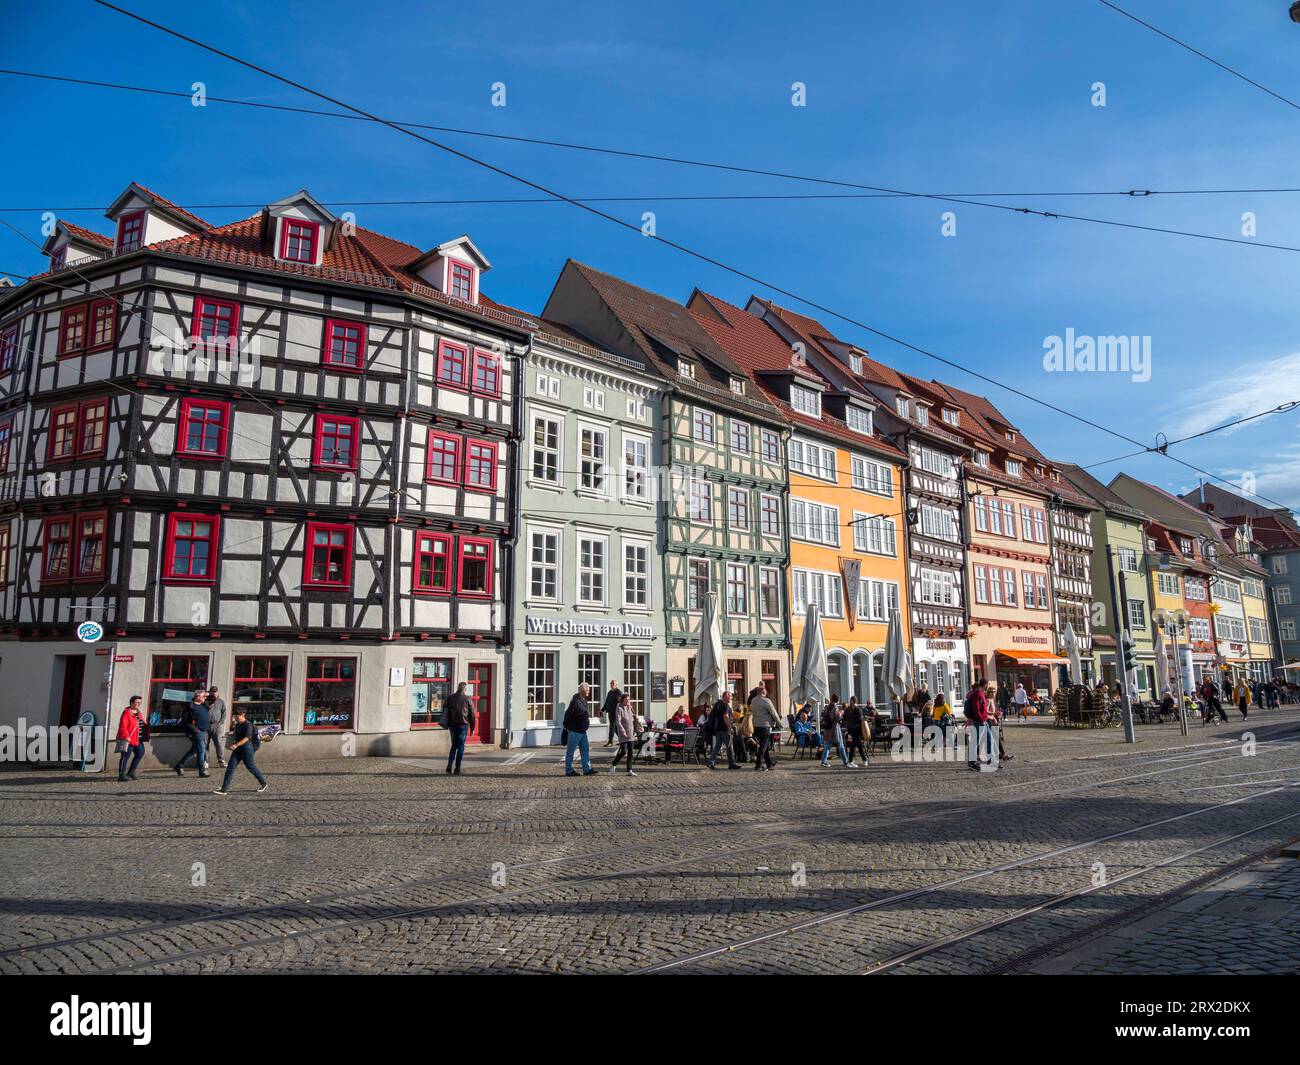 Blick auf die Stadt Erfurt, die Hauptstadt und größte Stadt des mitteldeutschen Landes Thüringen, Deutschland, Europa Stockfoto